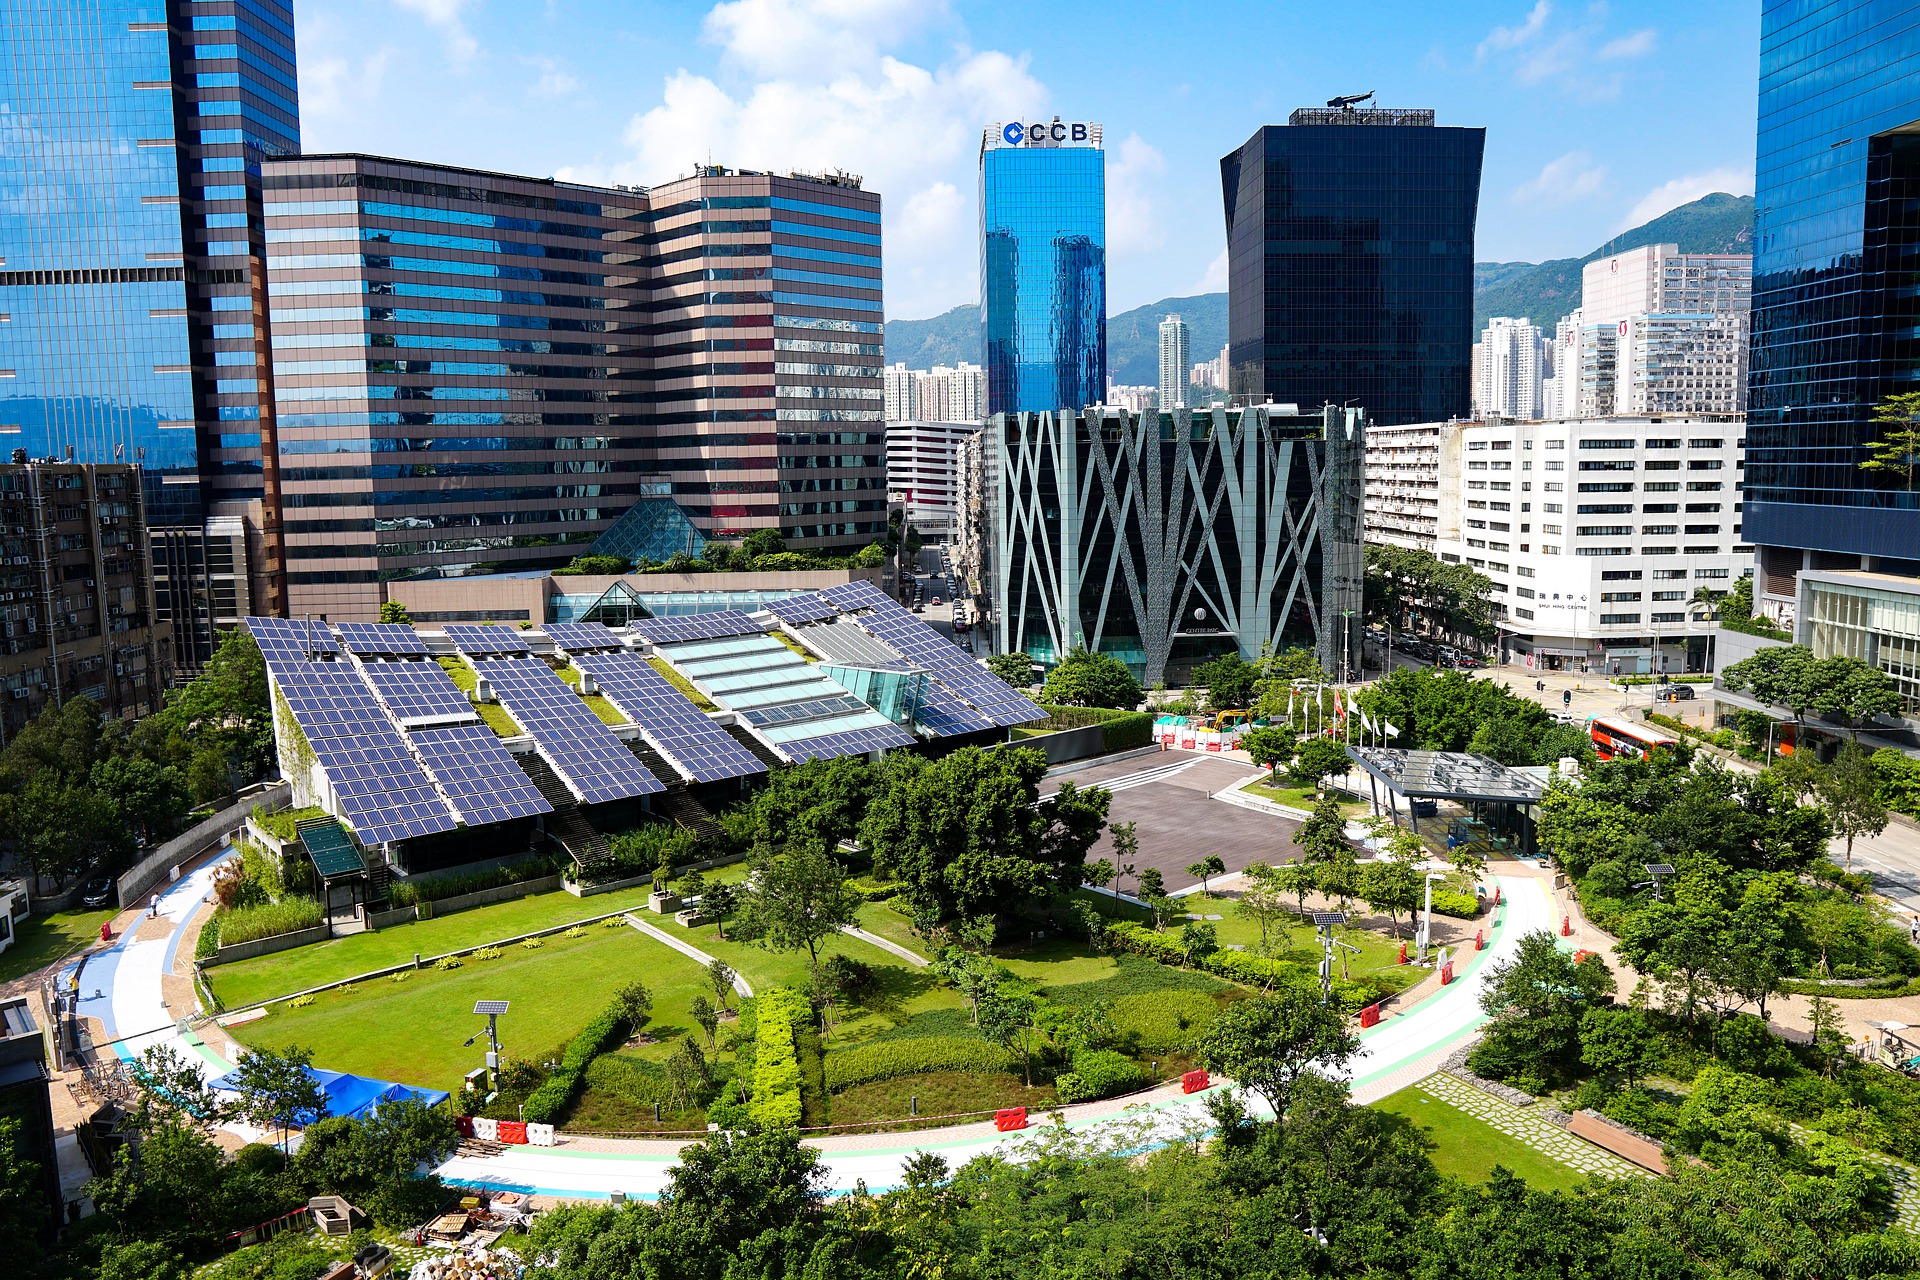 Homologação de energia solar - Elysia sistema fotovoltaico RS